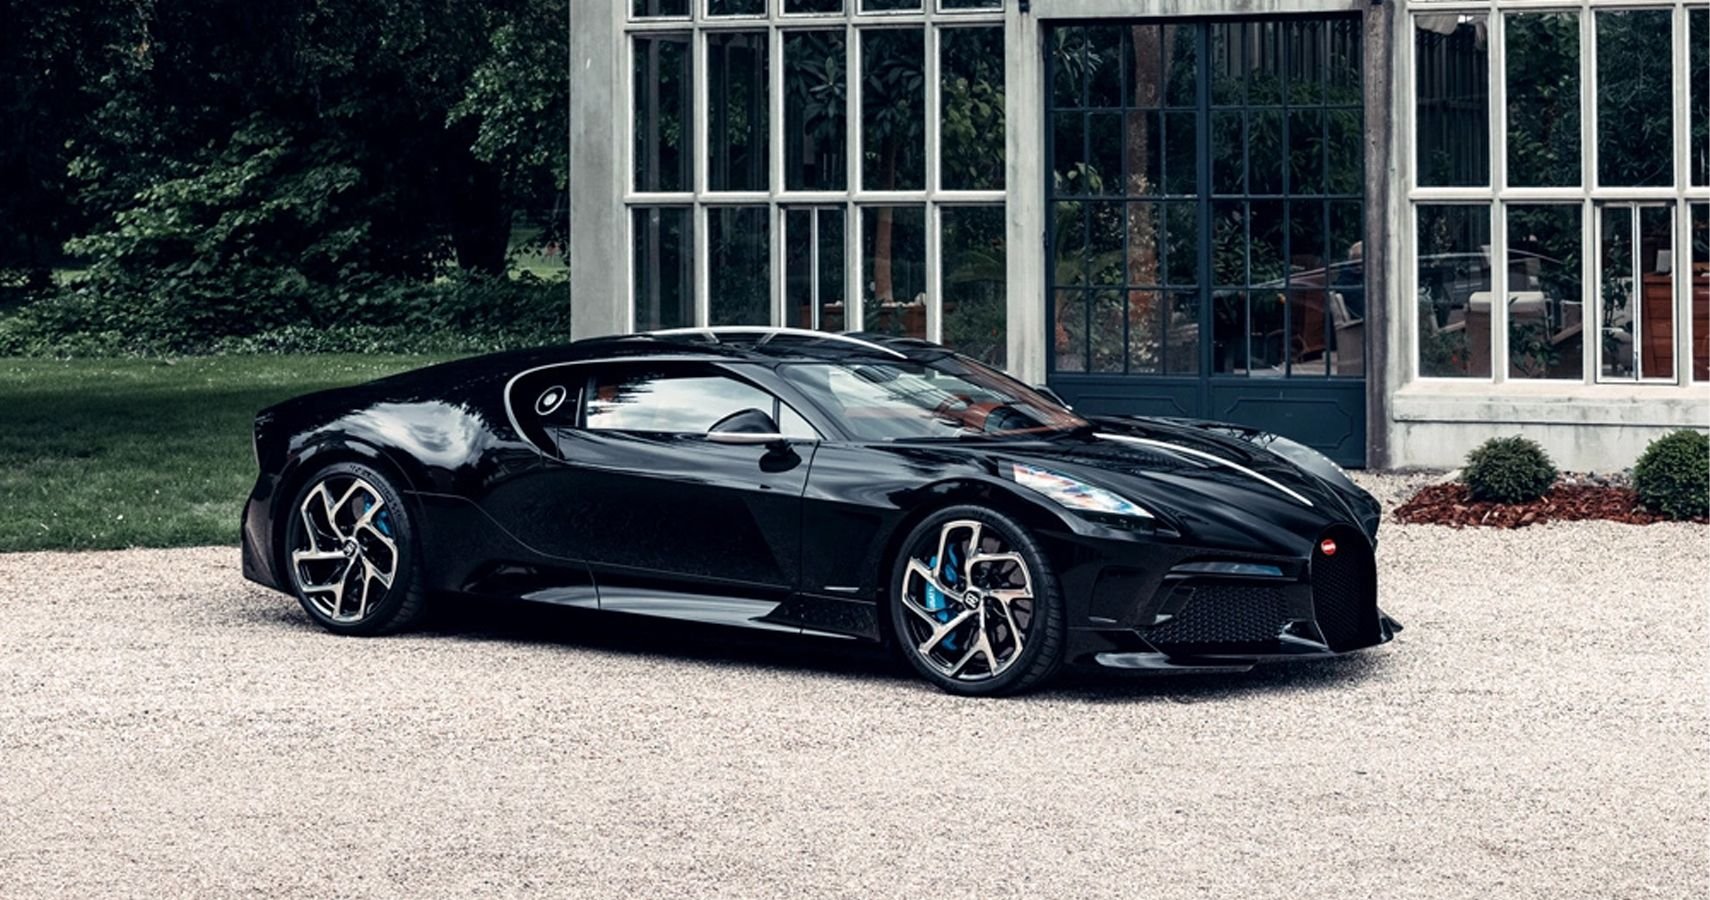 Take A Look At The $18.7 Million Bugatti La Voiture Noire